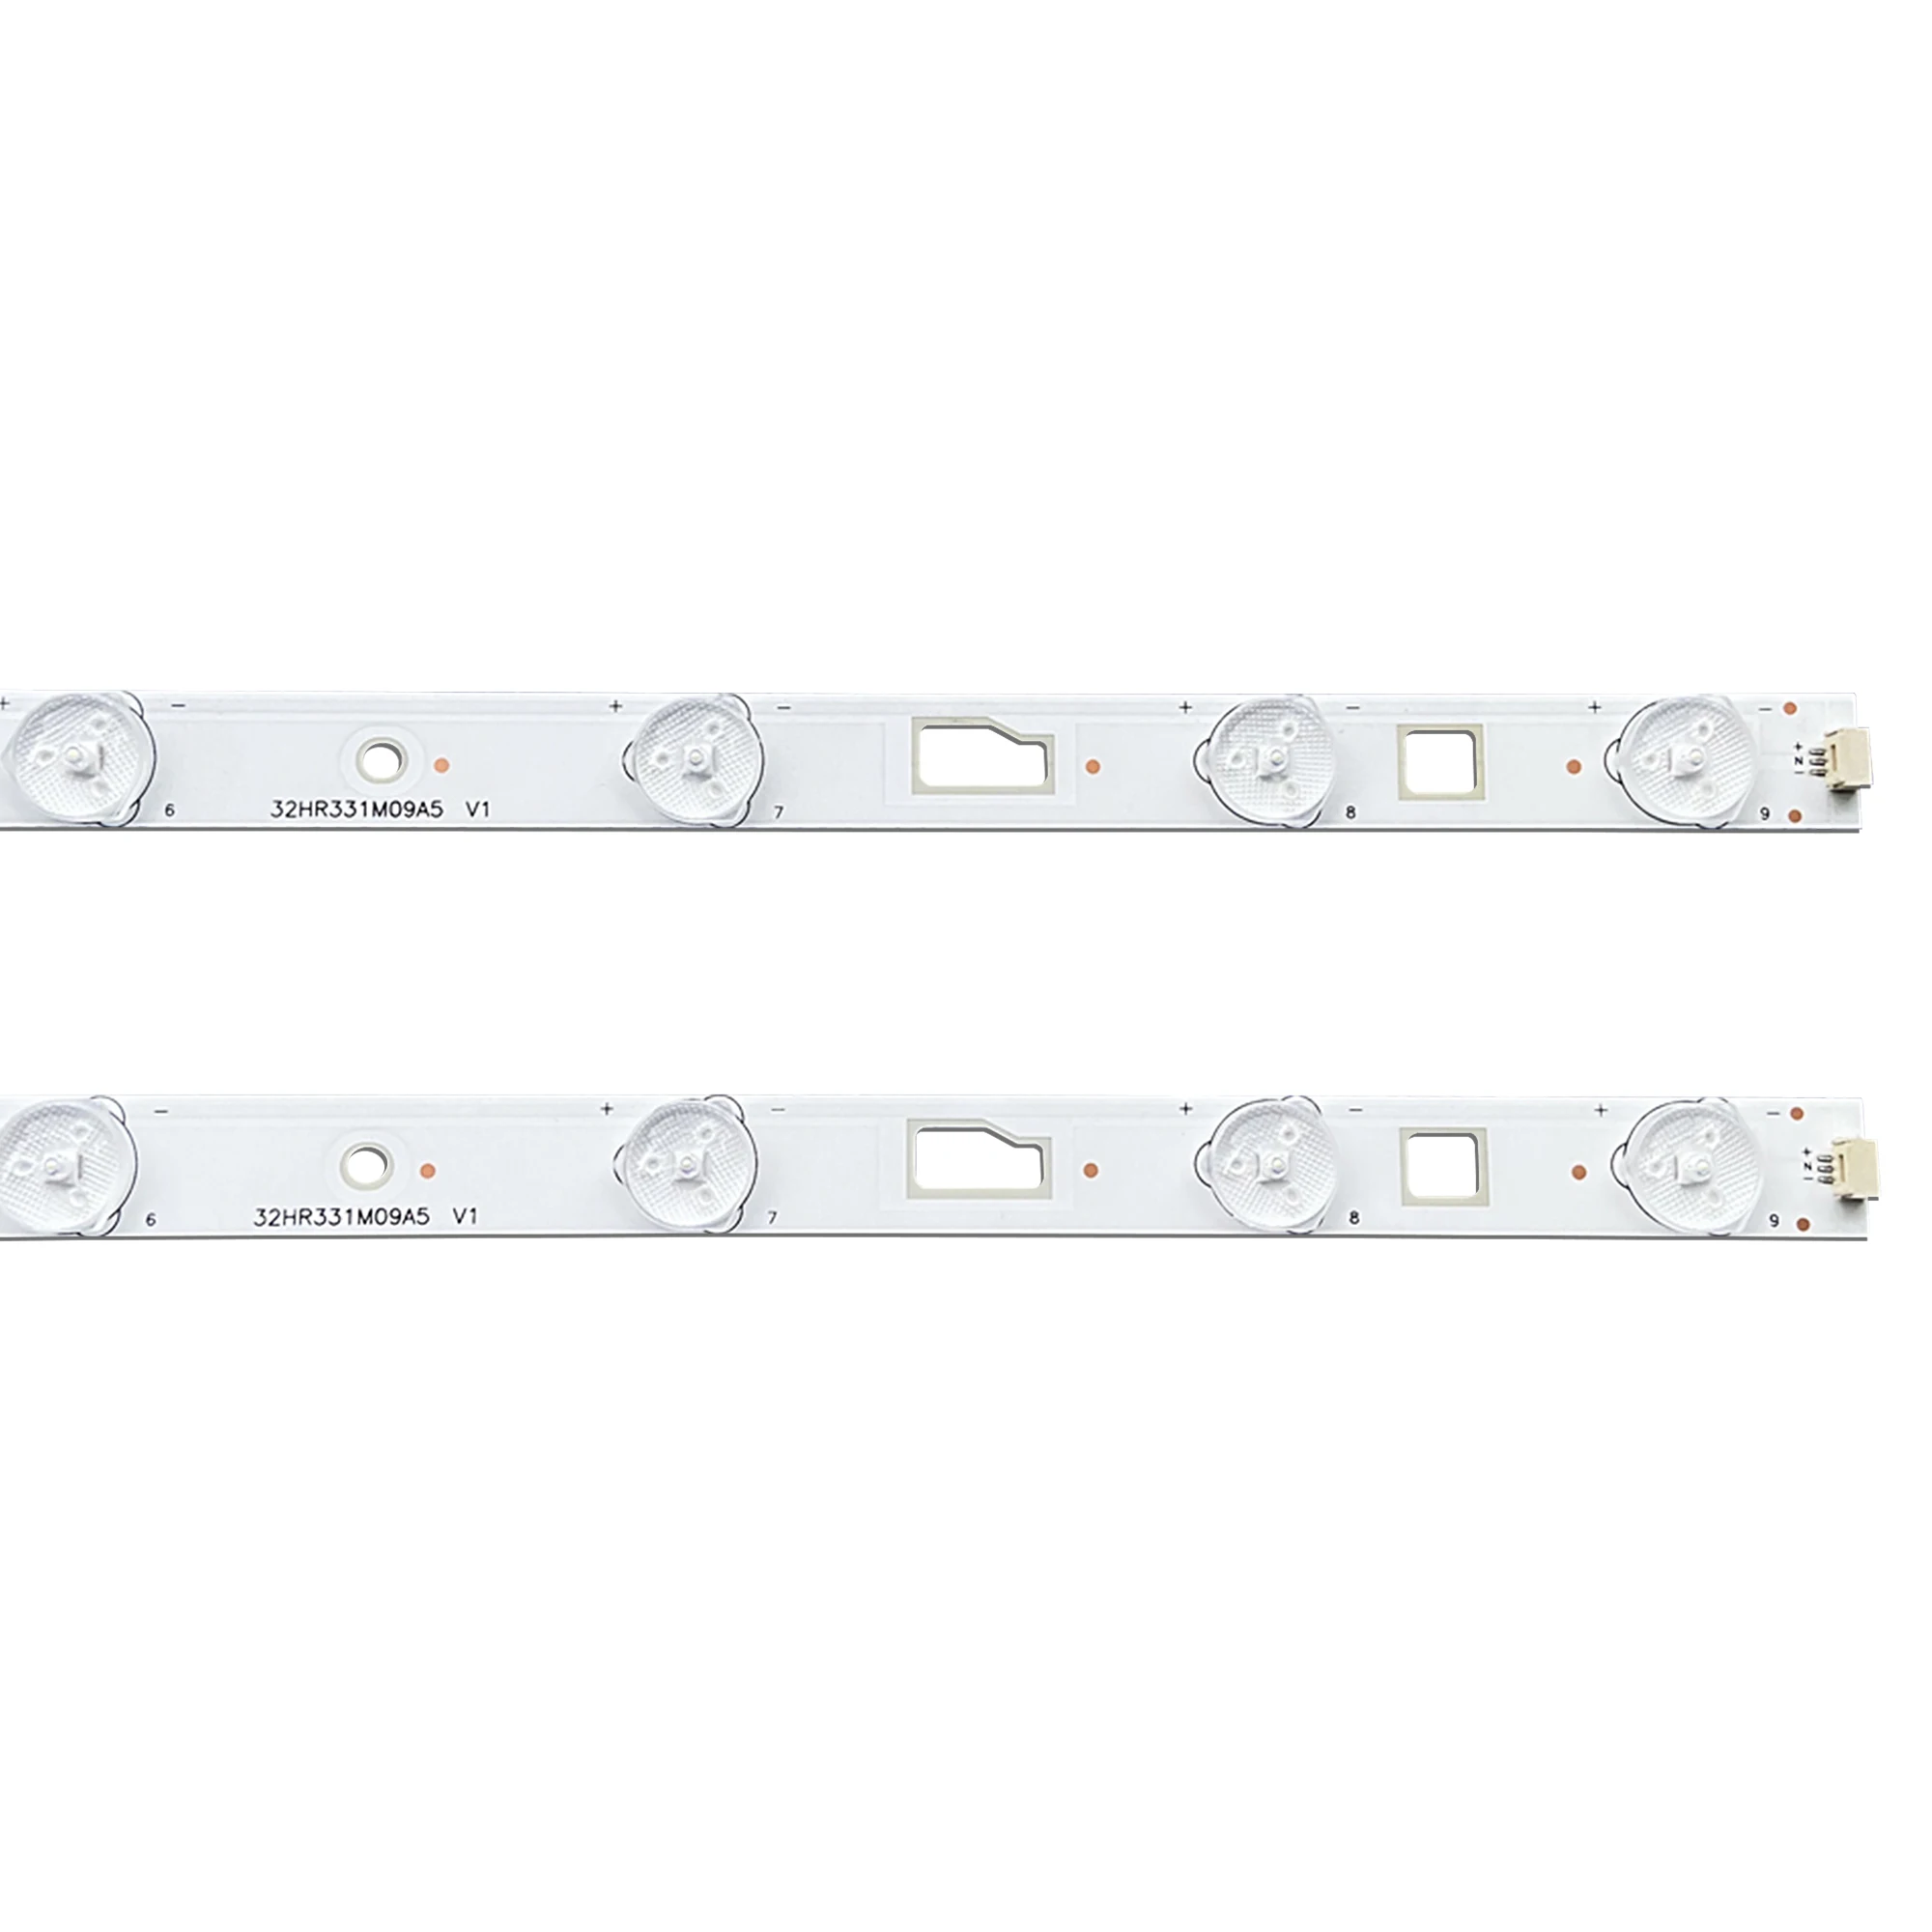 Bande de rétro-éclairage LED pour D32TS7202 KL TS01 580 barre lumineuse V1, M3229BA-V35416 MM, 10 pièces/lot